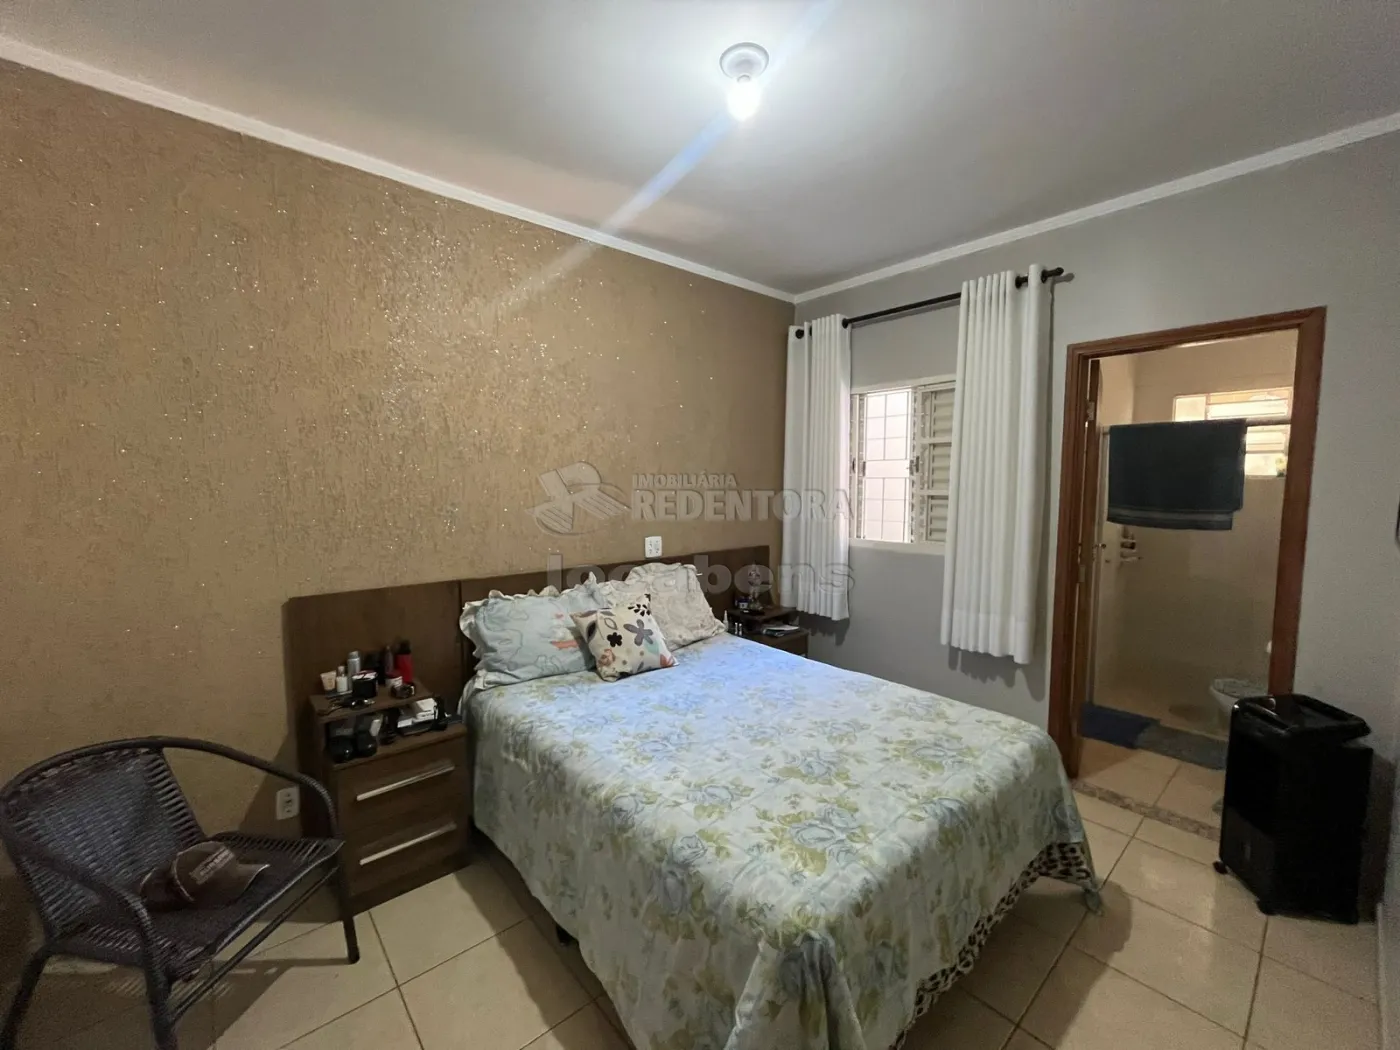 Comprar Casa / Padrão em São José do Rio Preto R$ 355.000,00 - Foto 6